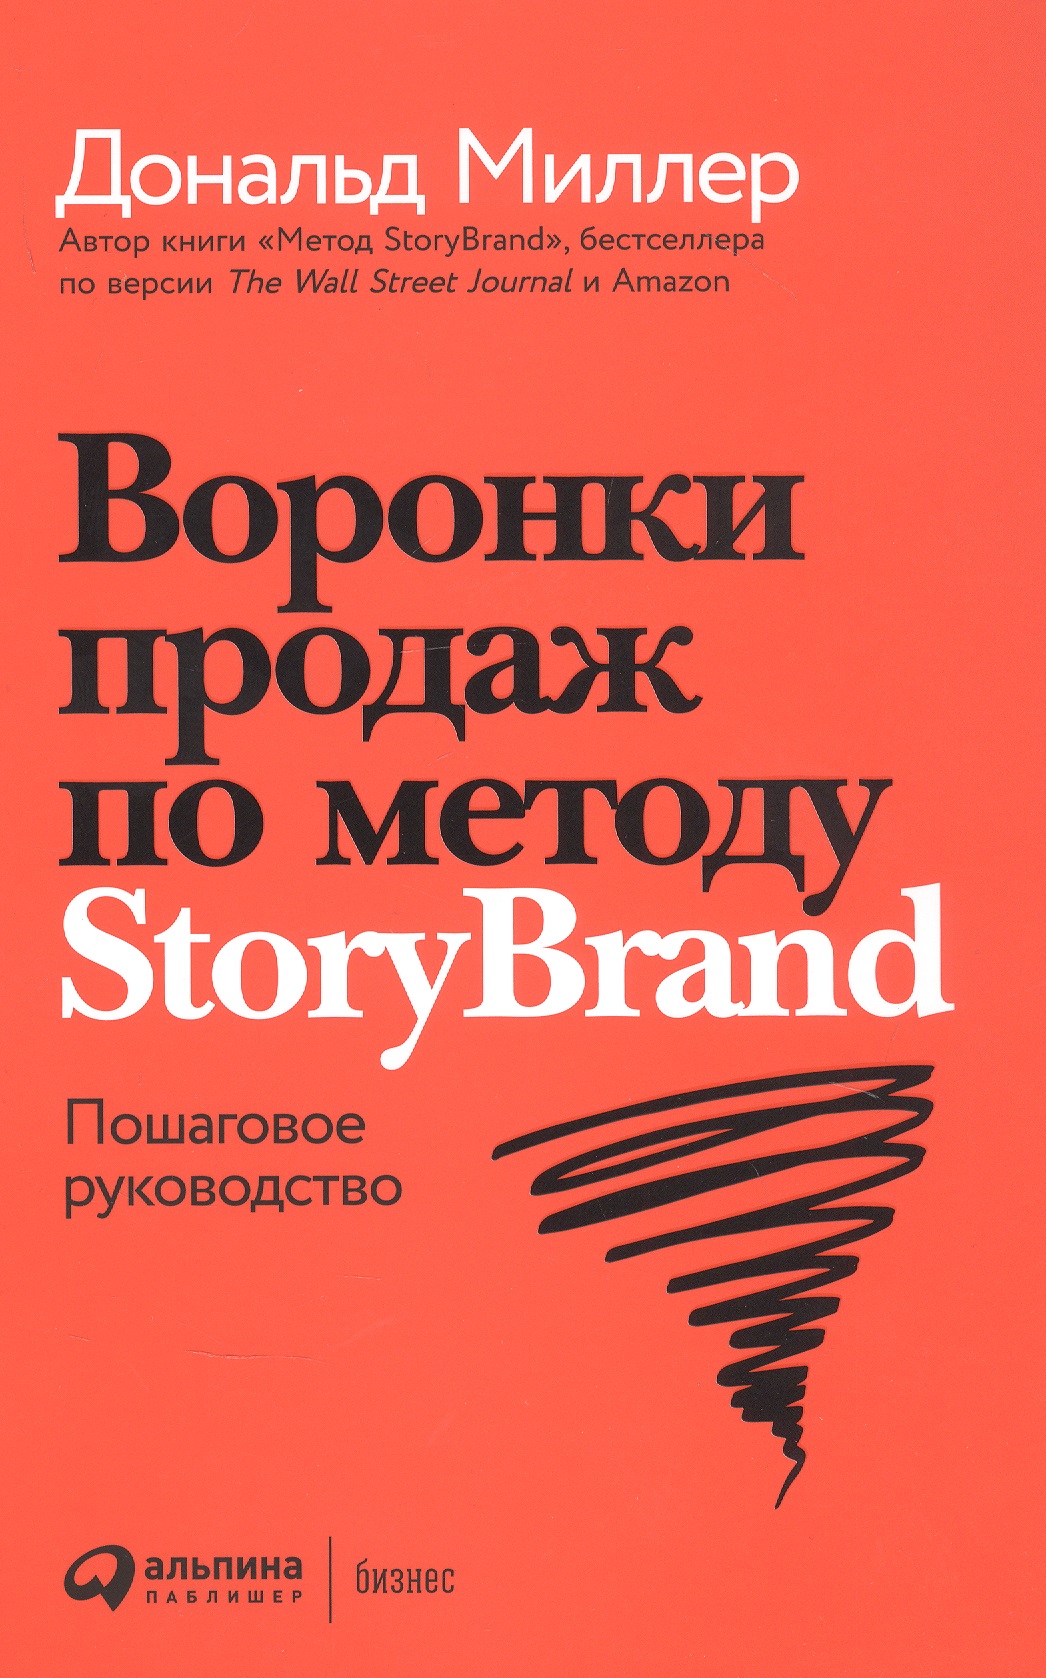 отдел продаж с нуля пошаговое руководство построения Миллер Дональд Воронки продаж по методу StoryBrand: Пошаговое руководство